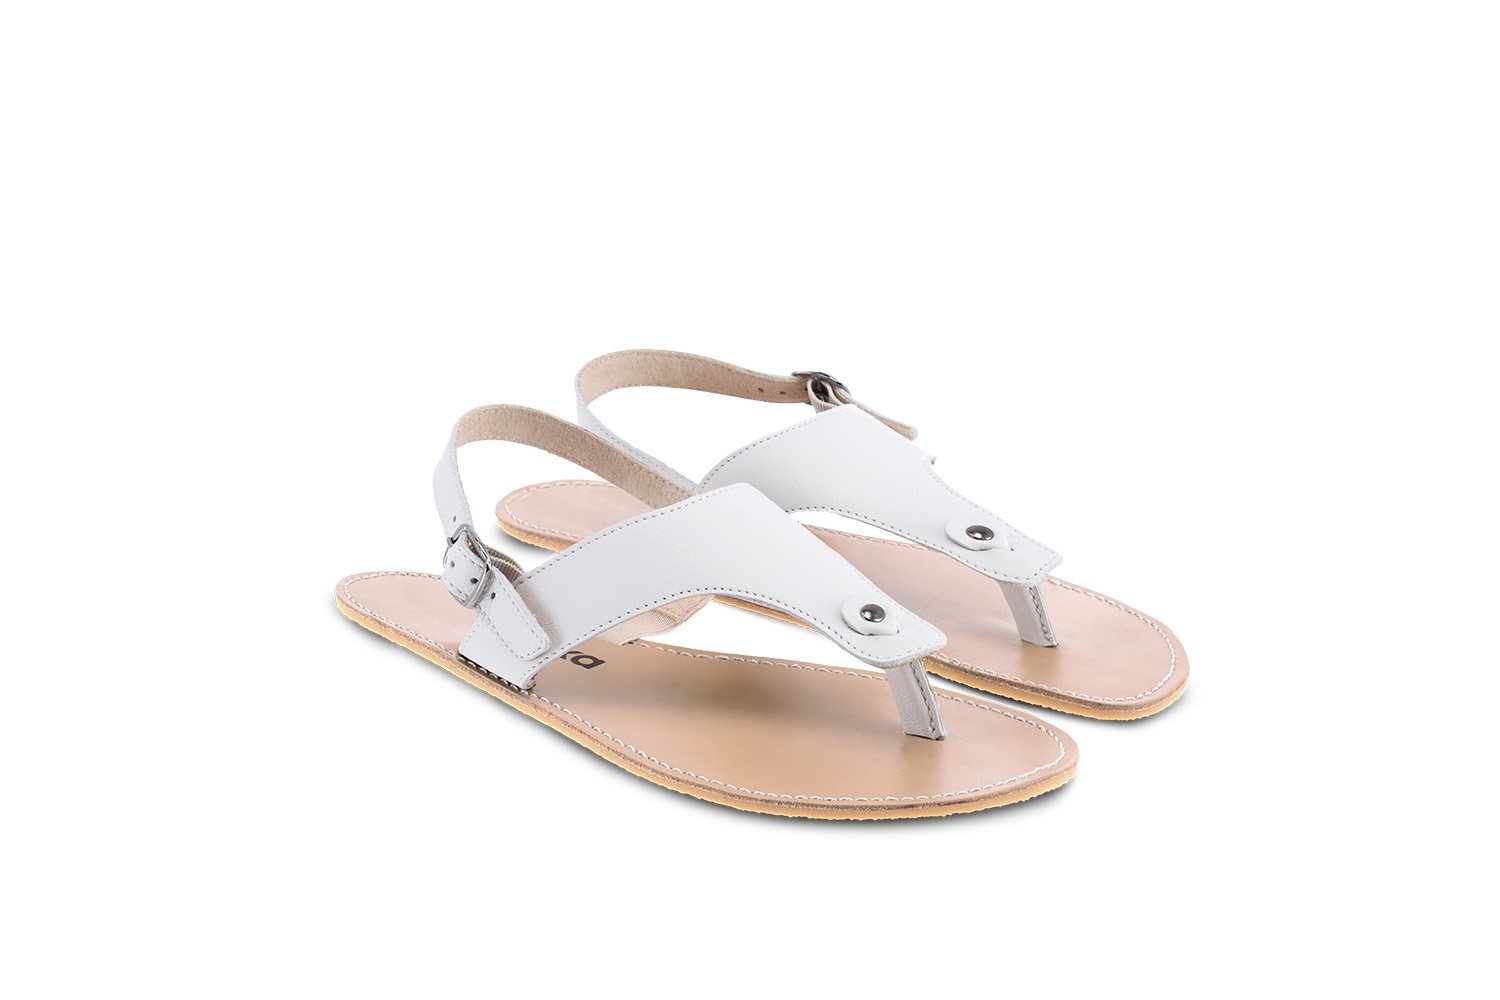 Barefoot Sandals - Be Lenka Promenade - Ivory White | Be Lenka